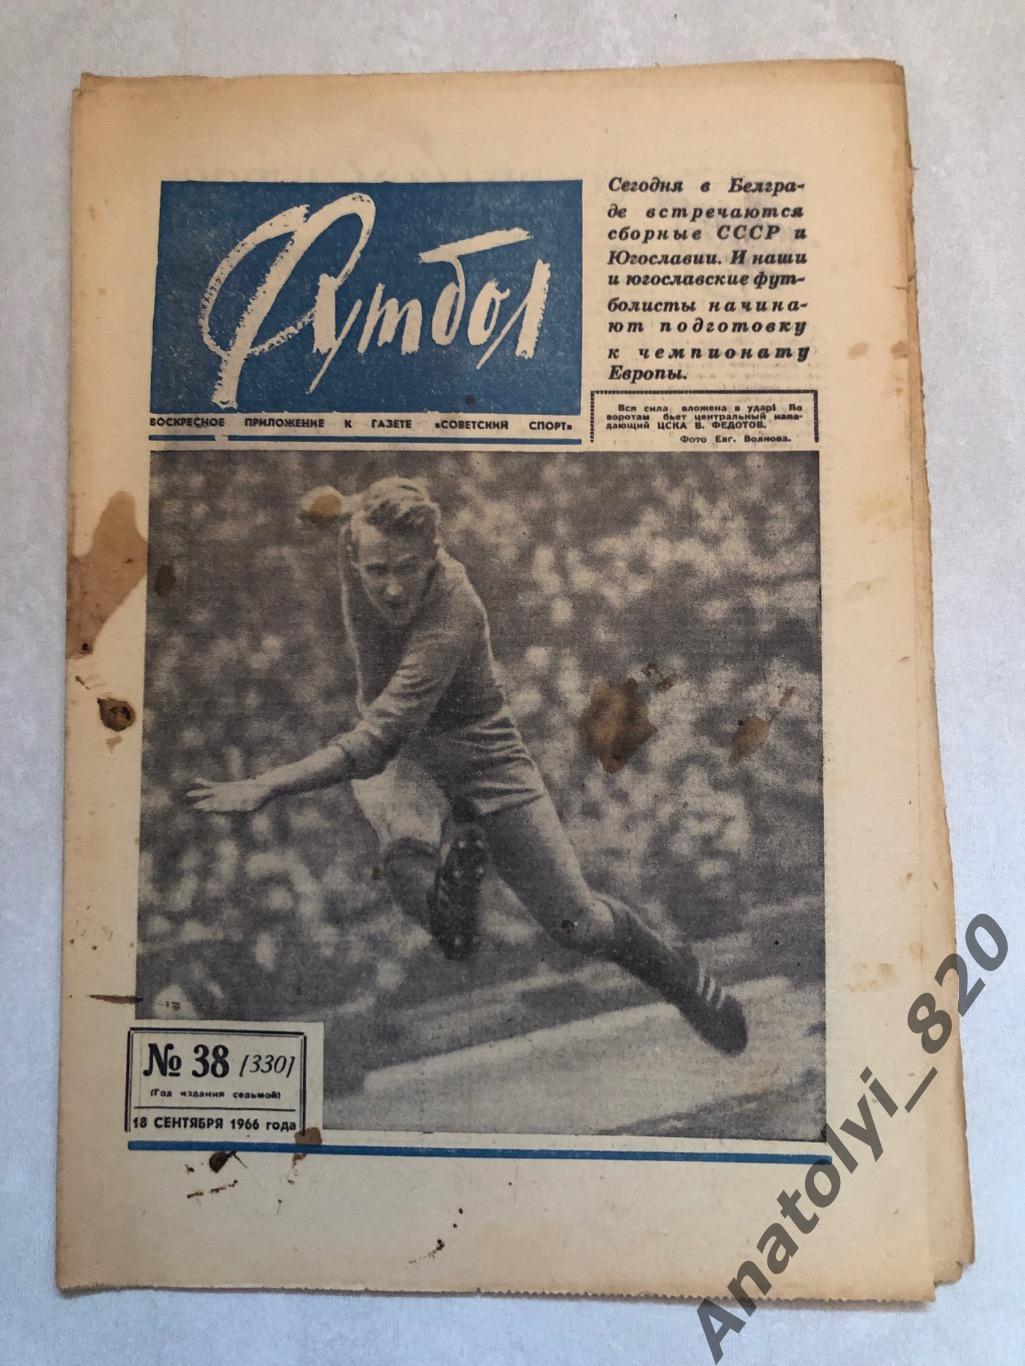 Еженедельник футбол номер 38 от 18.09.1966